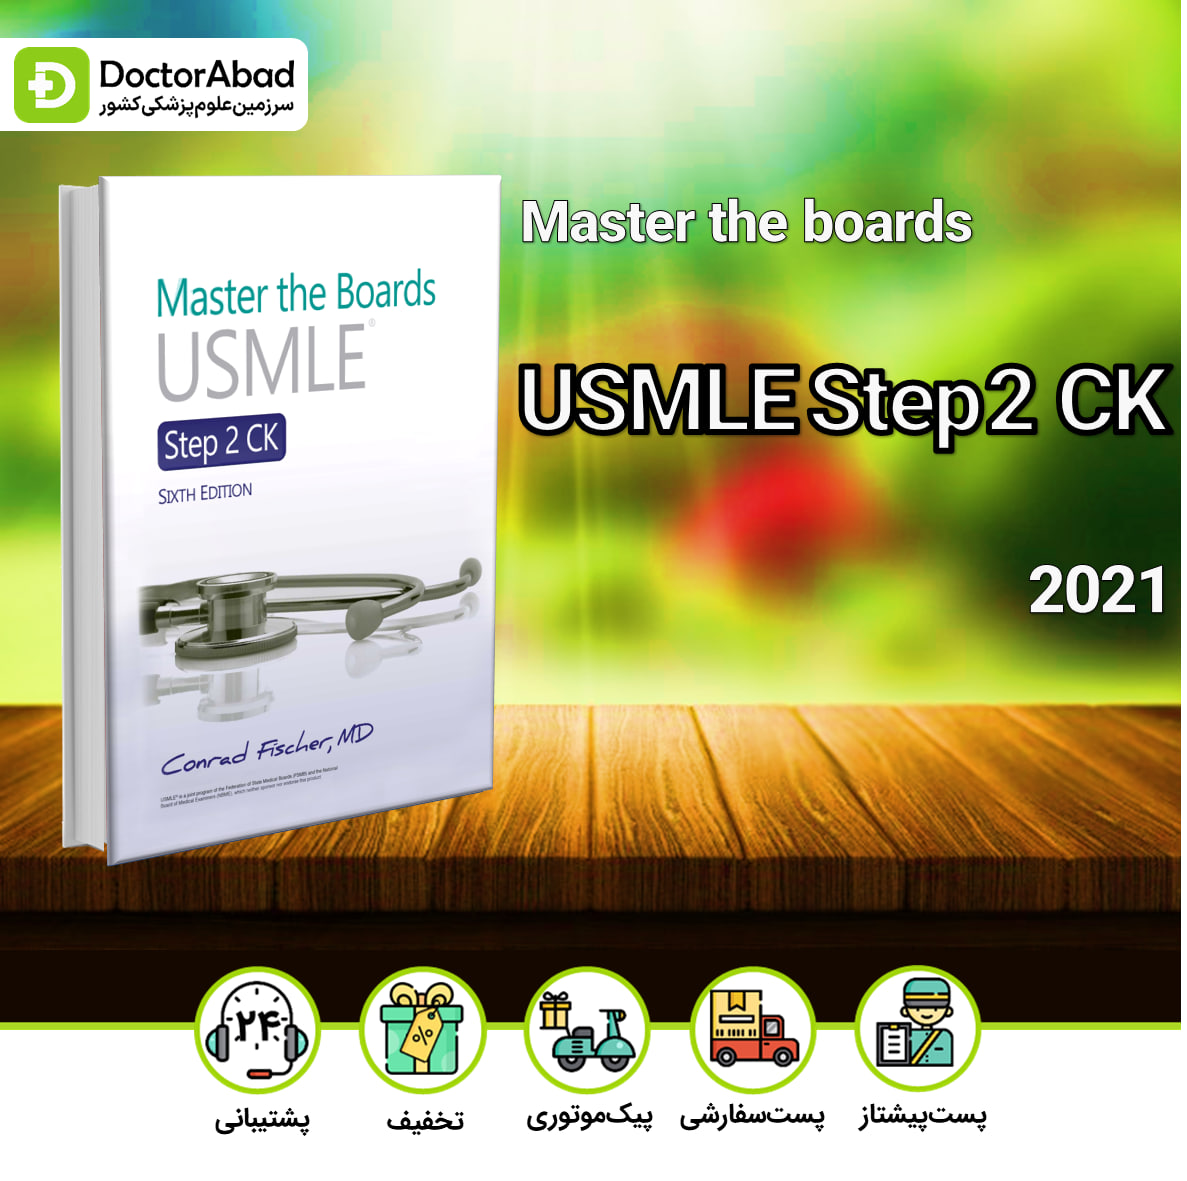 Master the Boards USMLE Step 2 CK 2021